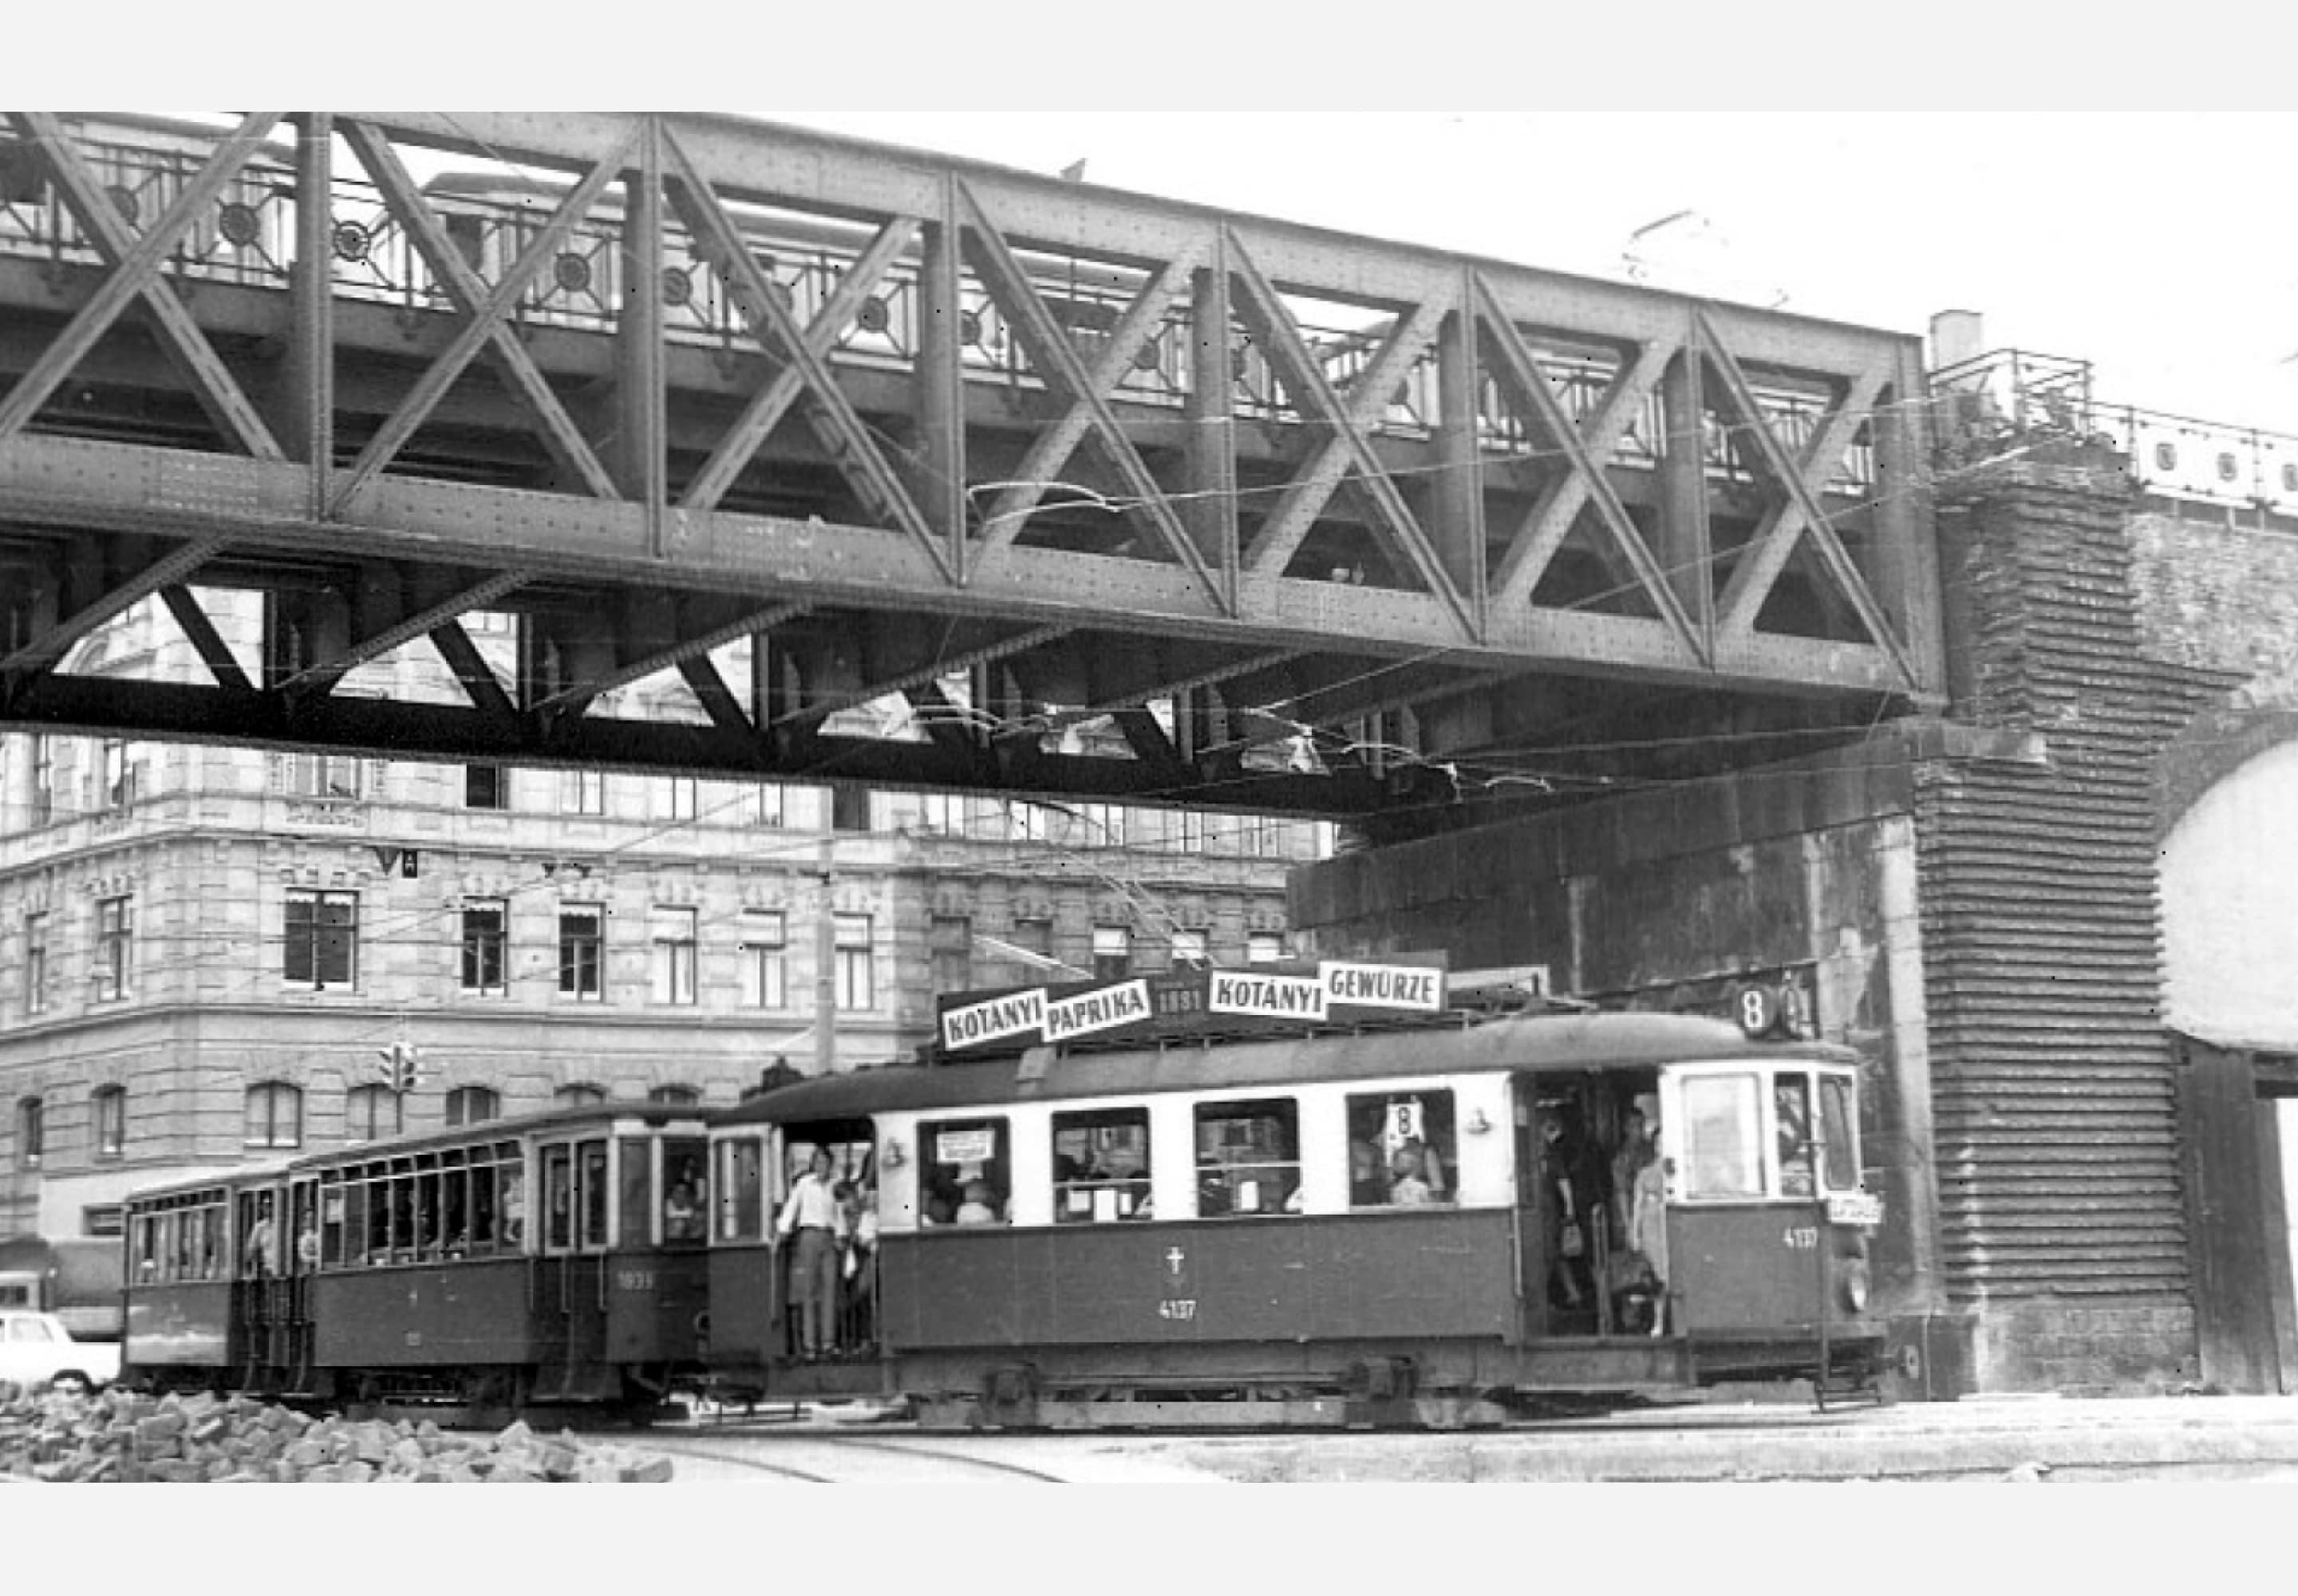 Wiedeński tramwaj z reklamą Kotányi z 1957 r.